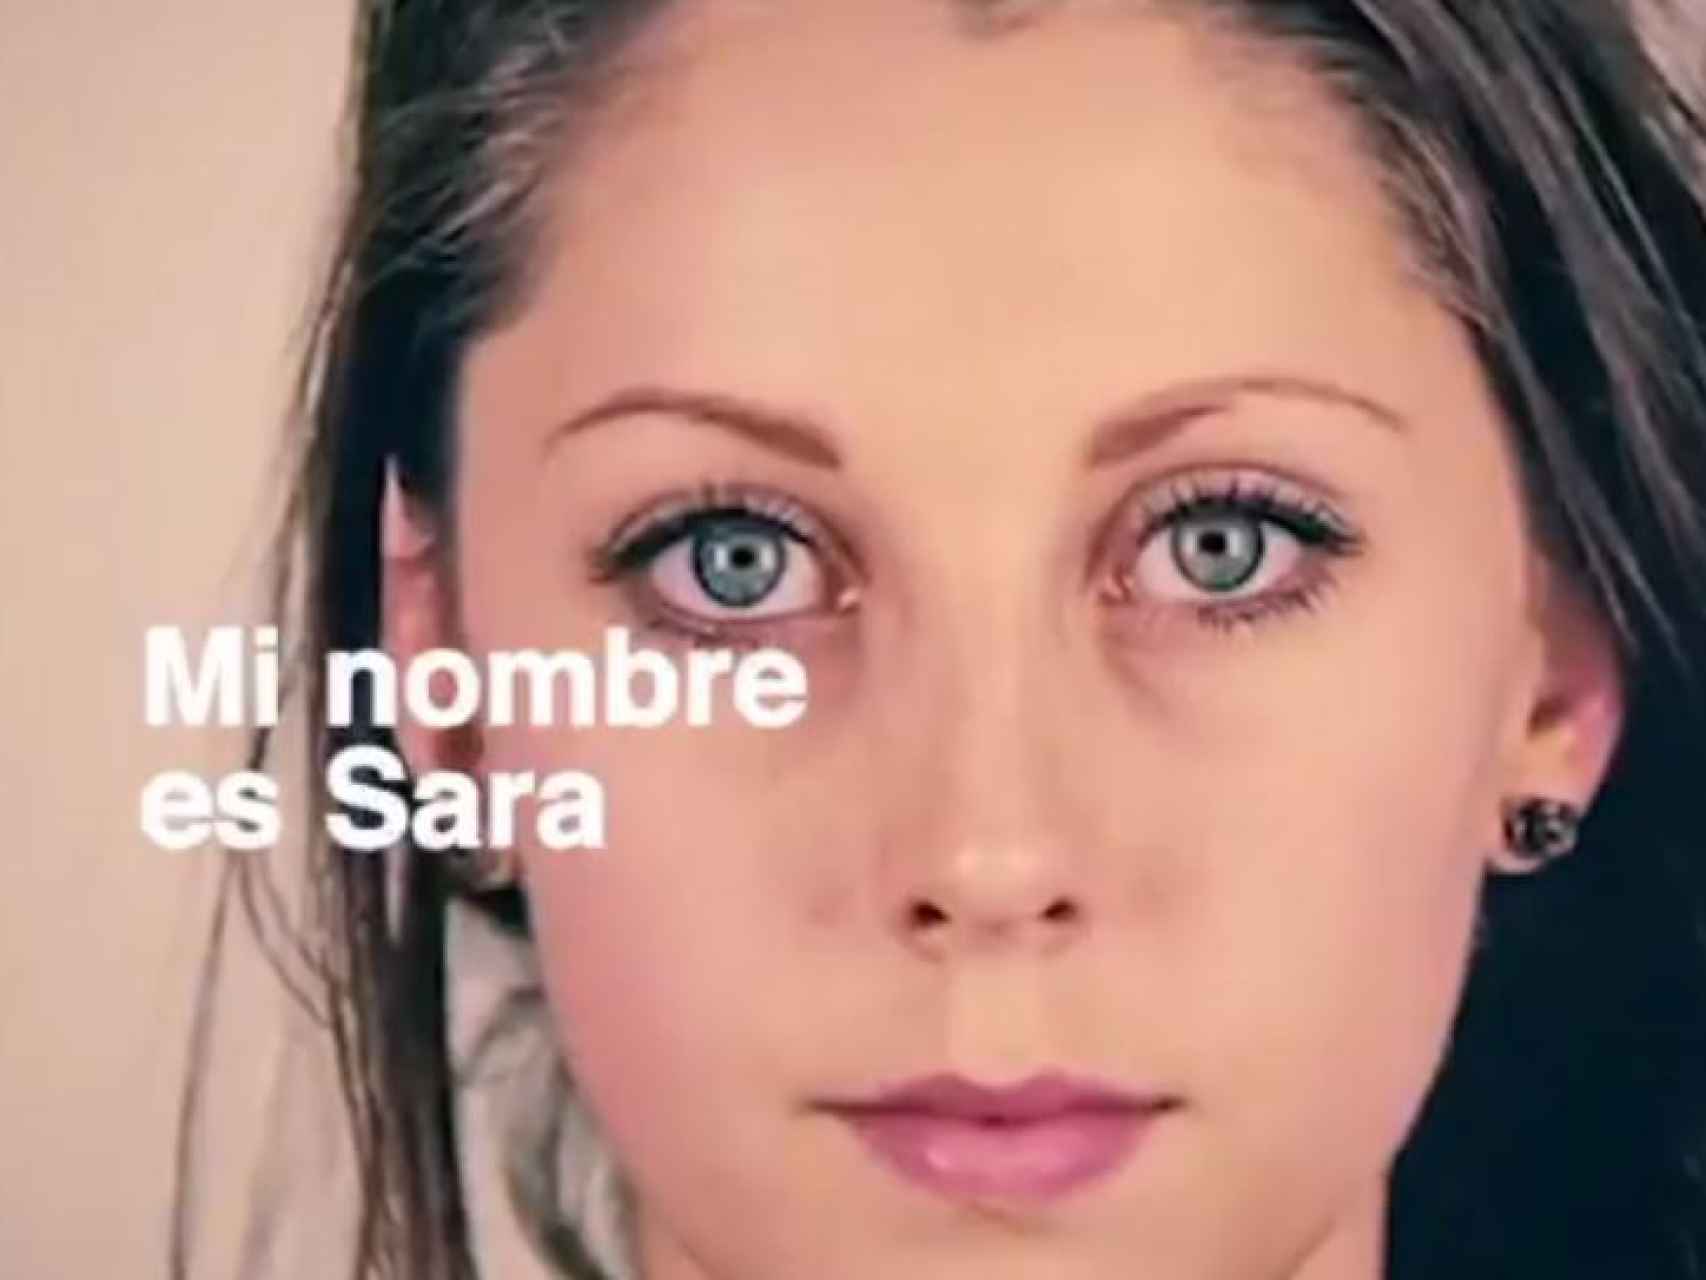 La protagonista del vídeo de Societat Civil Catalana se llama Sara y tiene 20 años.